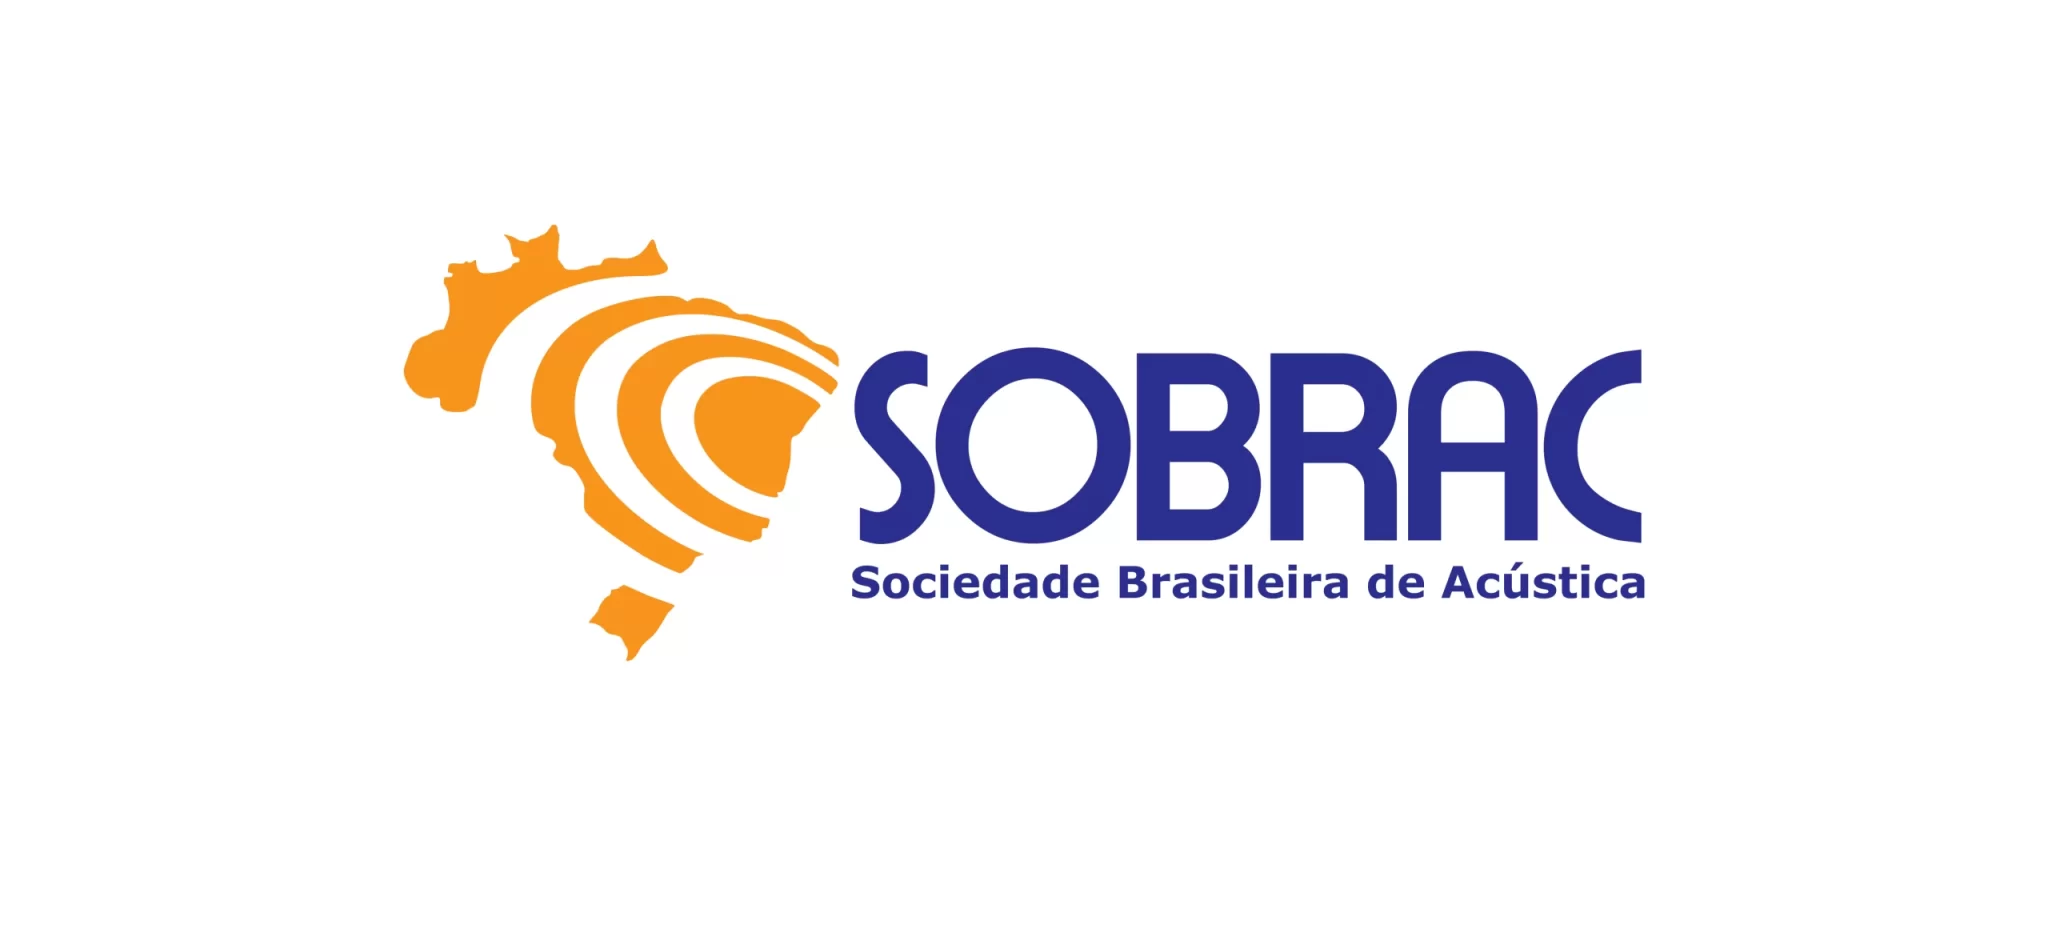 Brazilian Acoustical Association